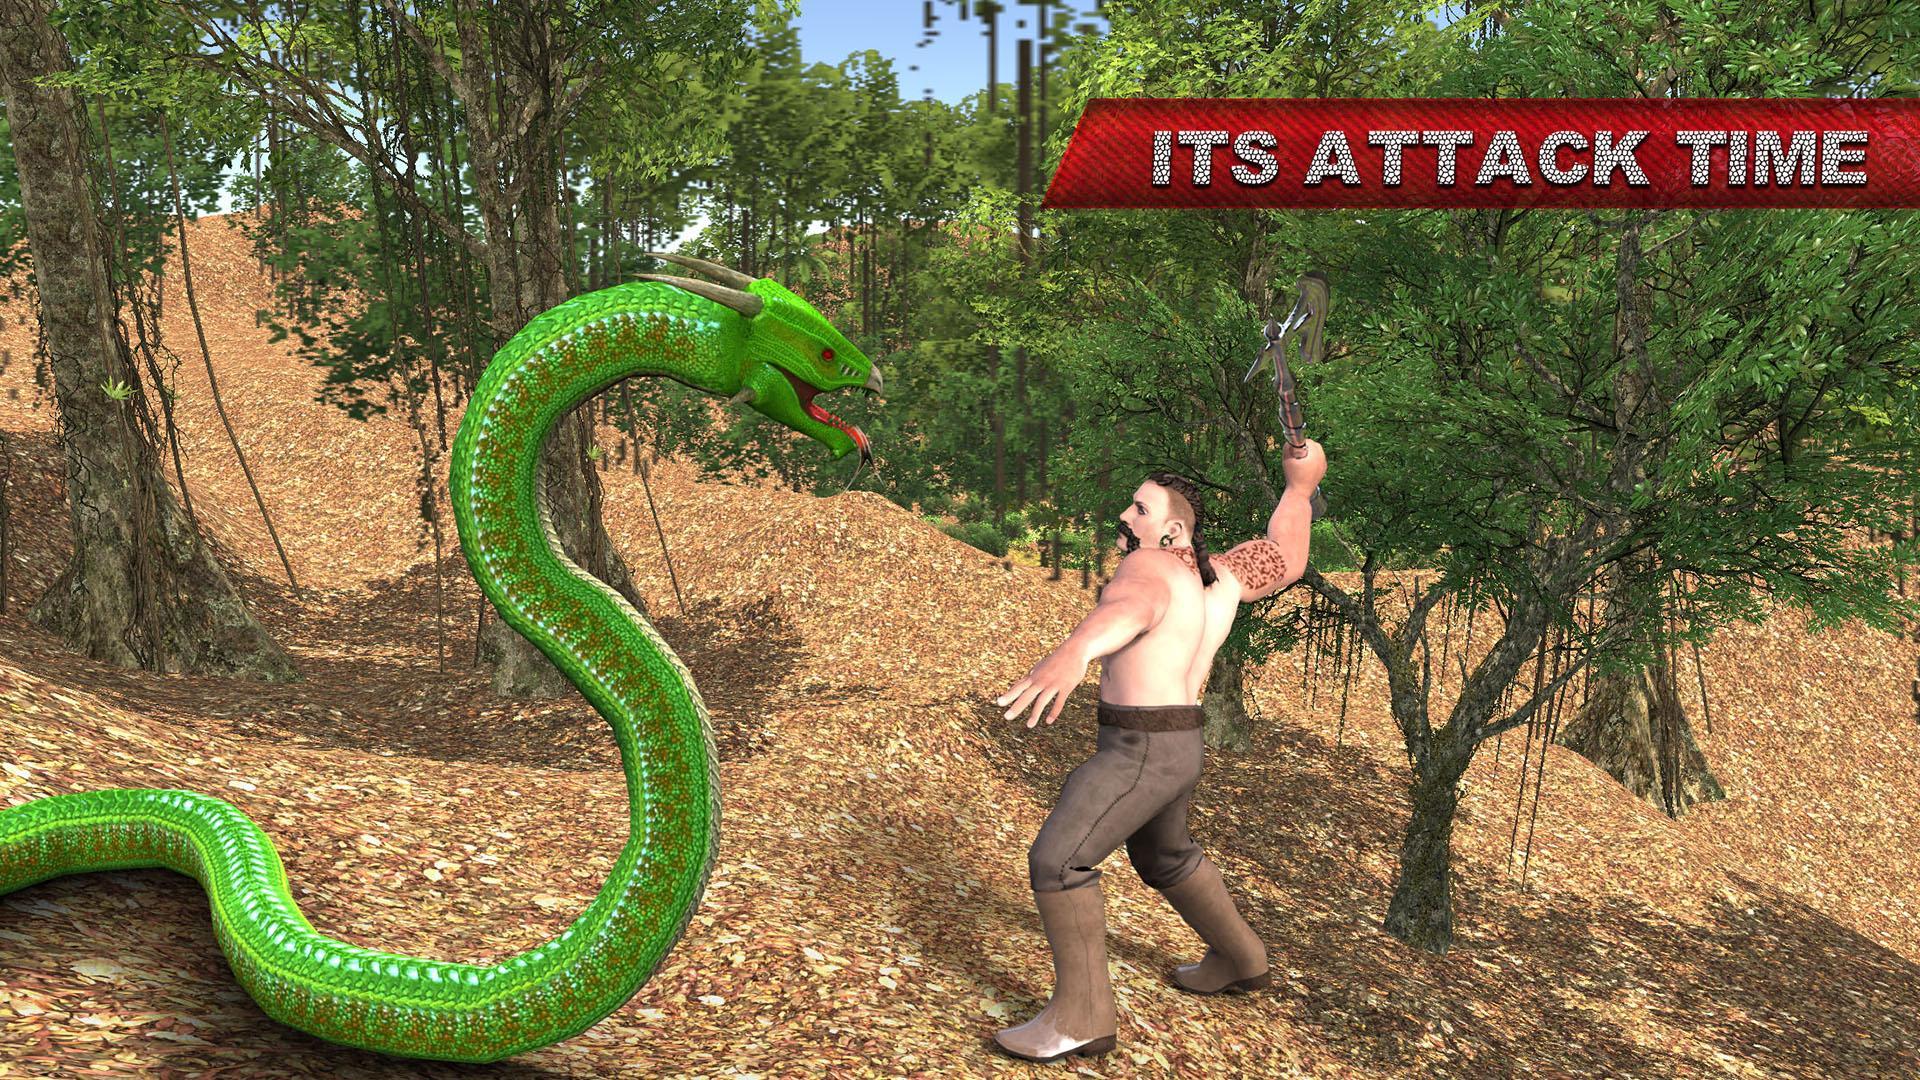 Анаконда 3 анаконда 1. Анаконда игра. Нападение гигантской змеи.